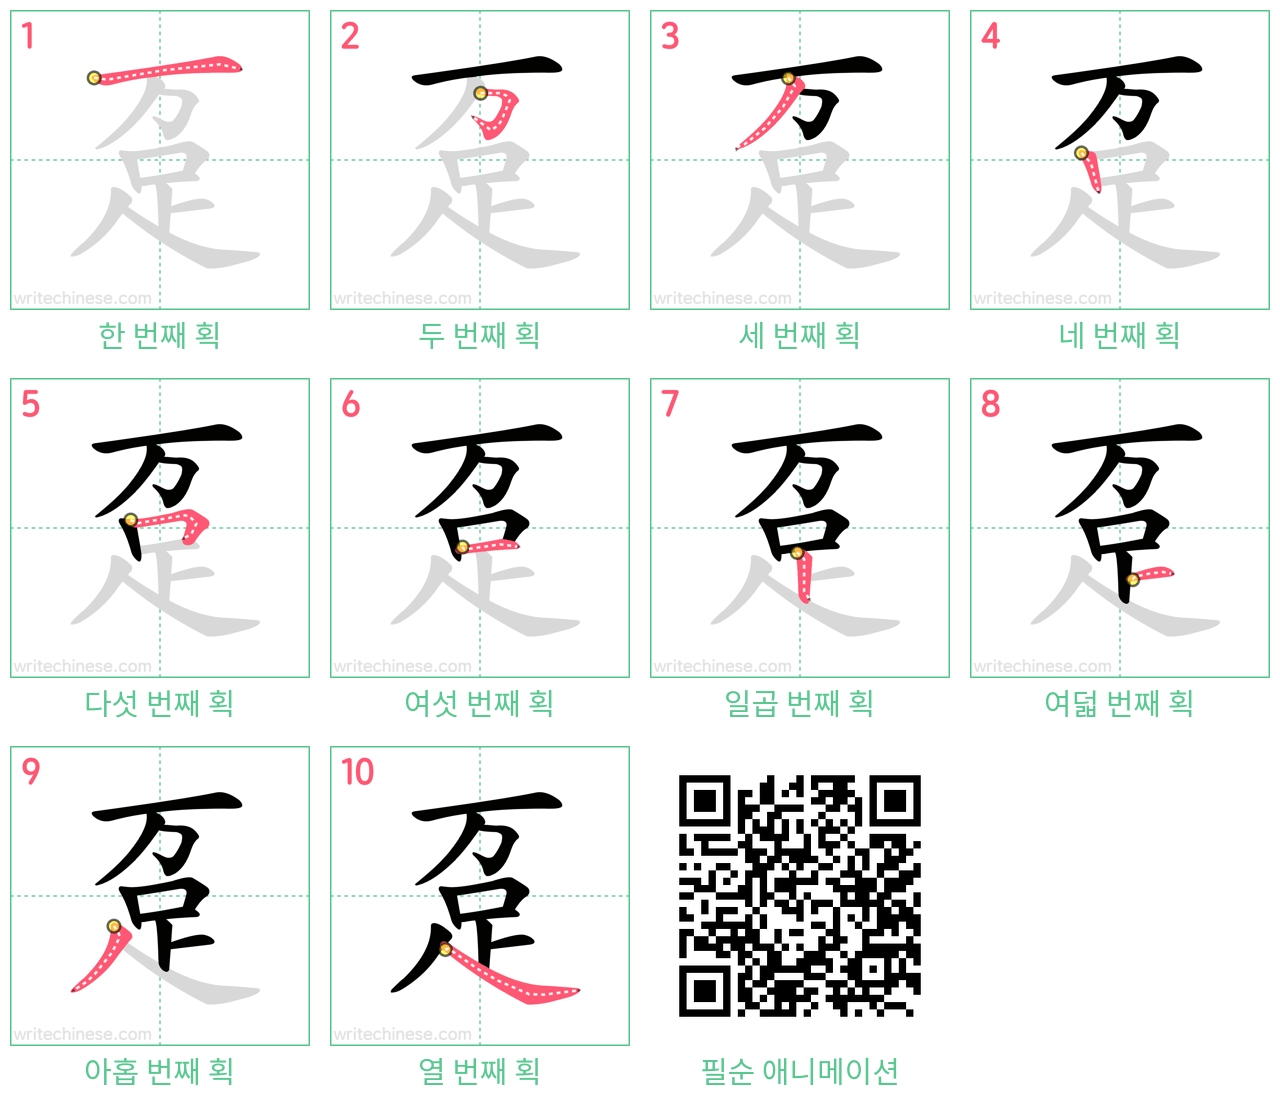 趸 step-by-step stroke order diagrams